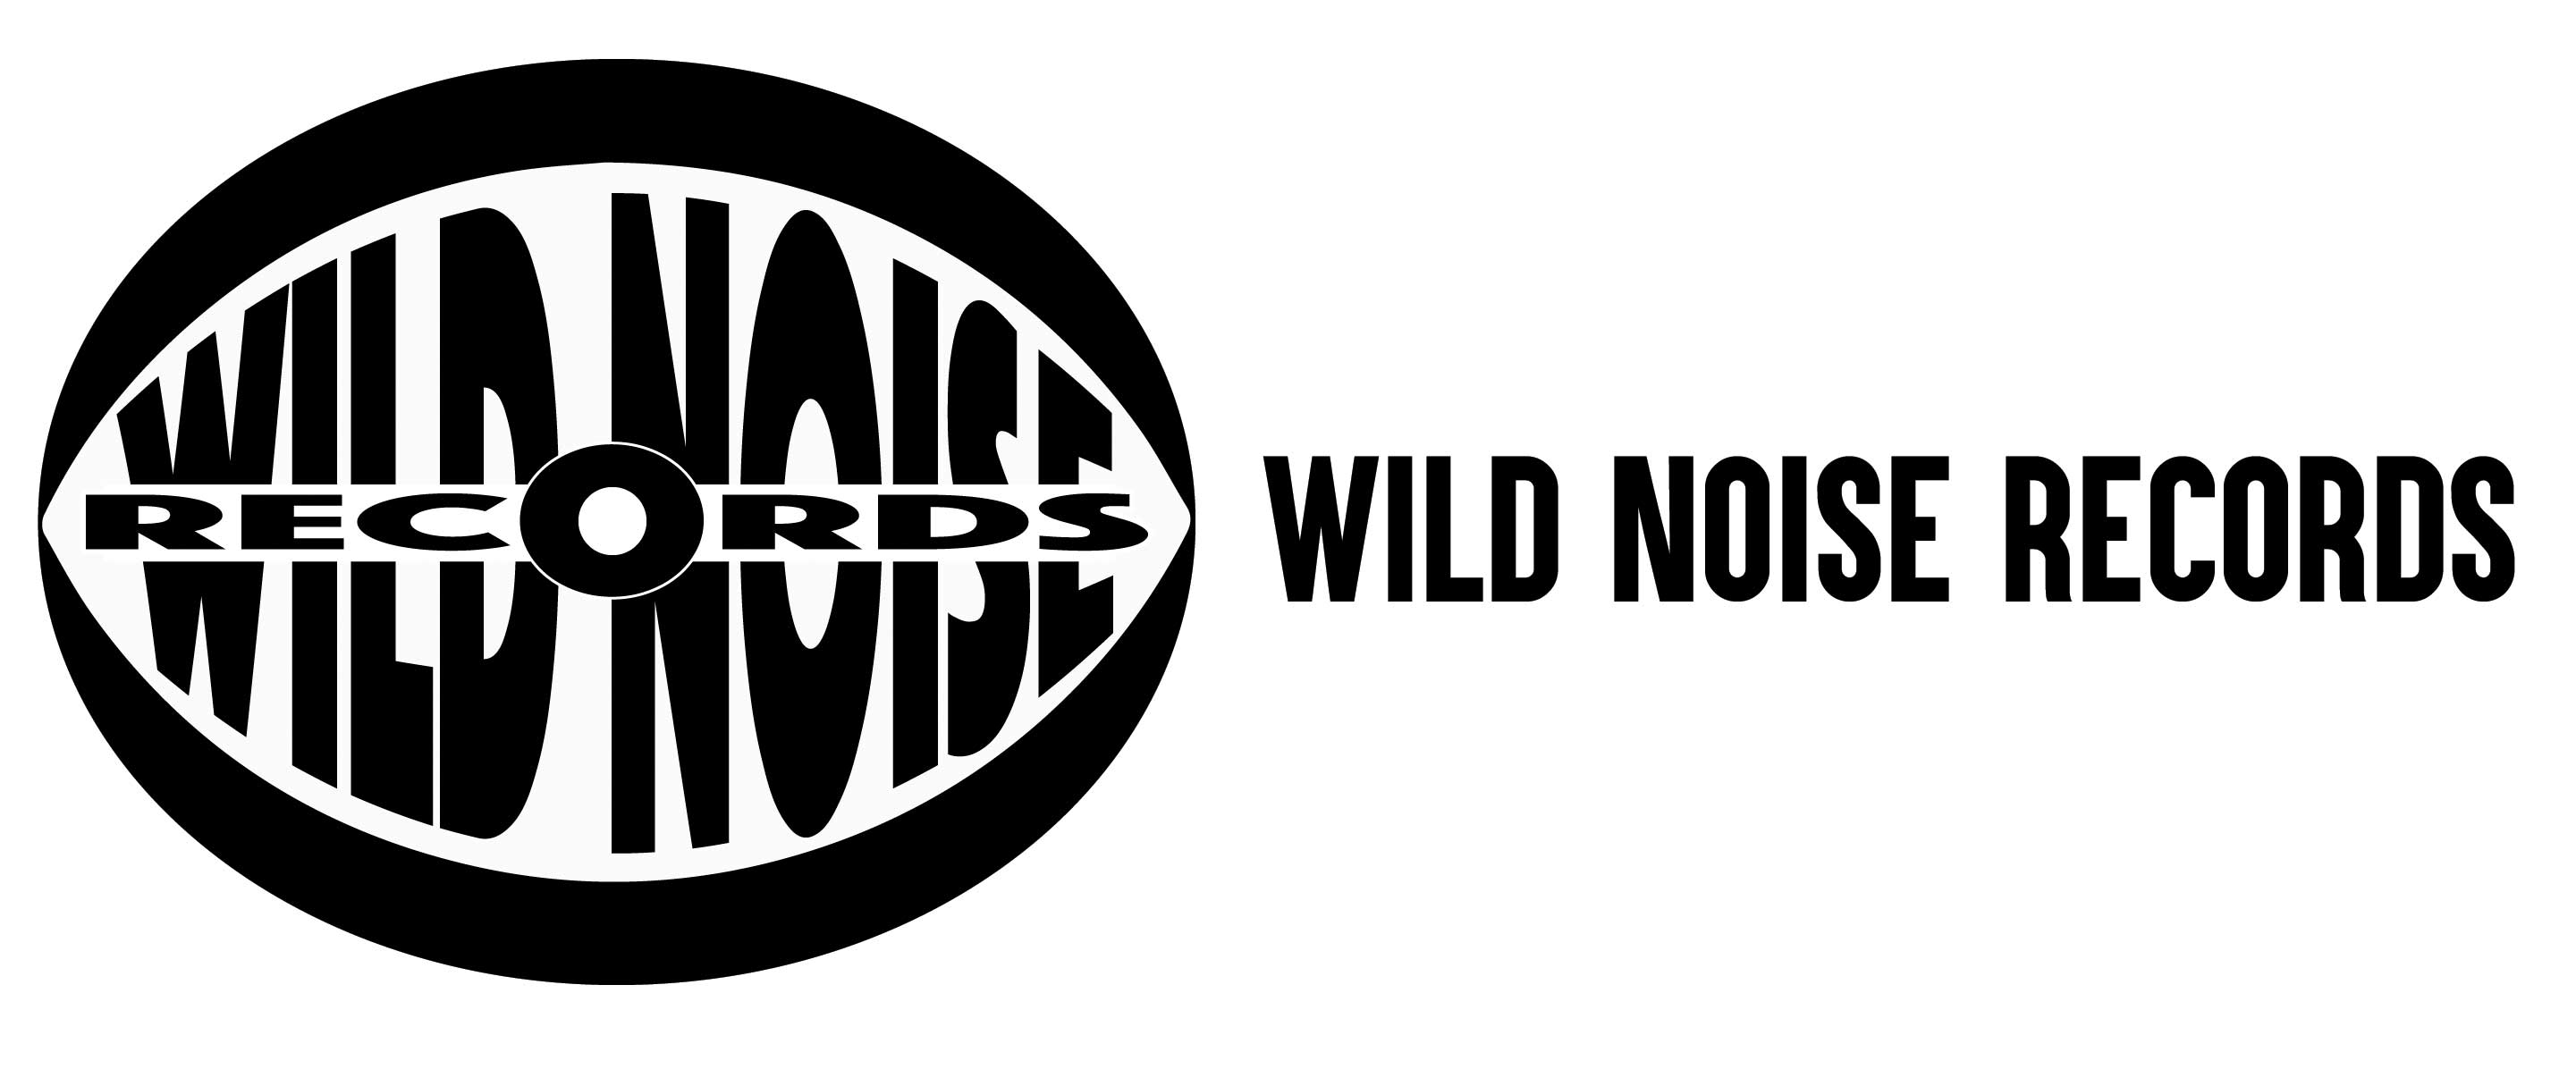 WILD NOISE RECORDS